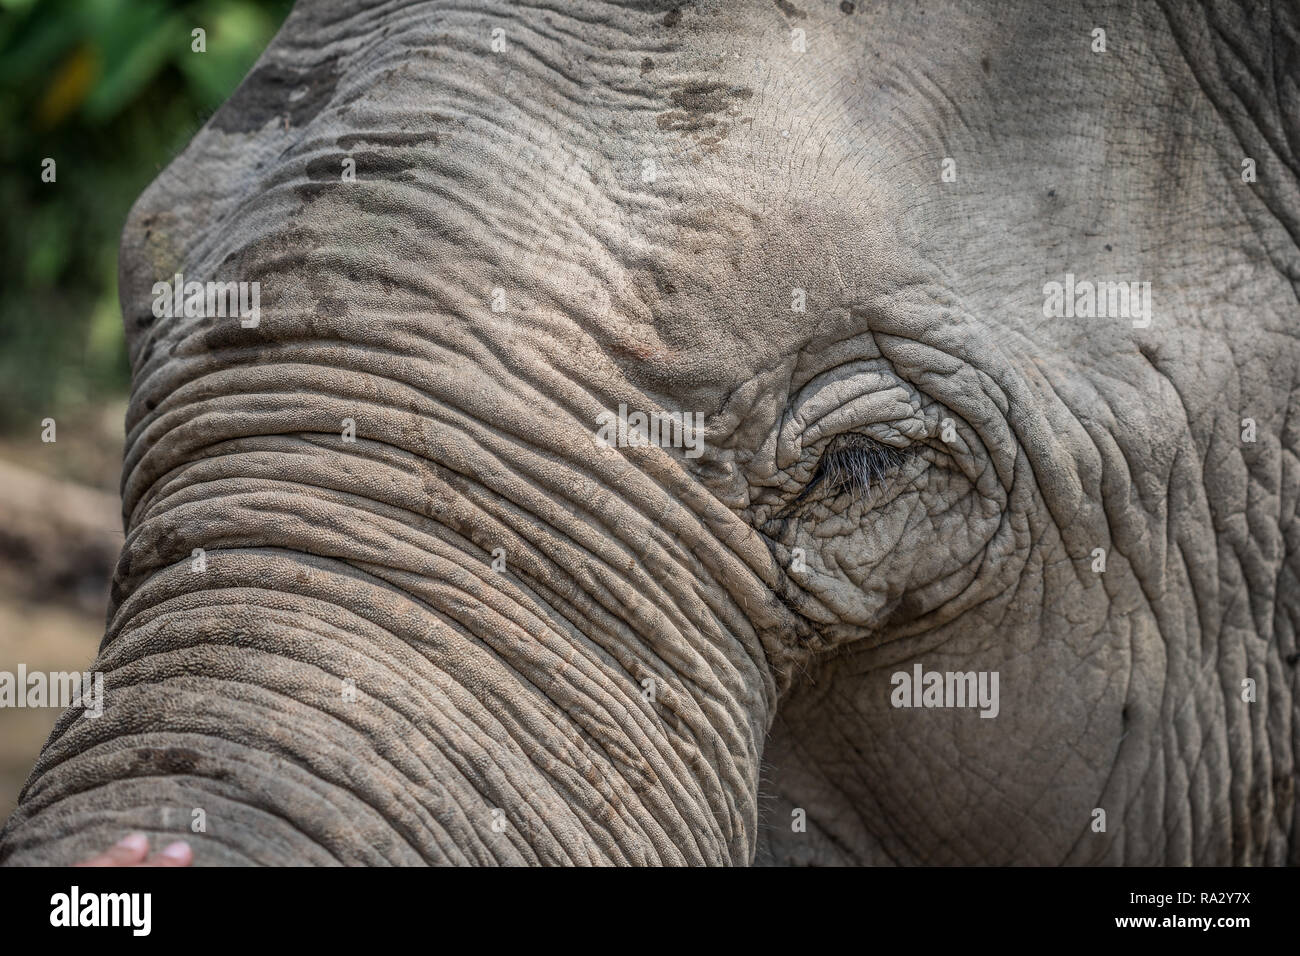 Eyes of Asian Elephant Stock Photo